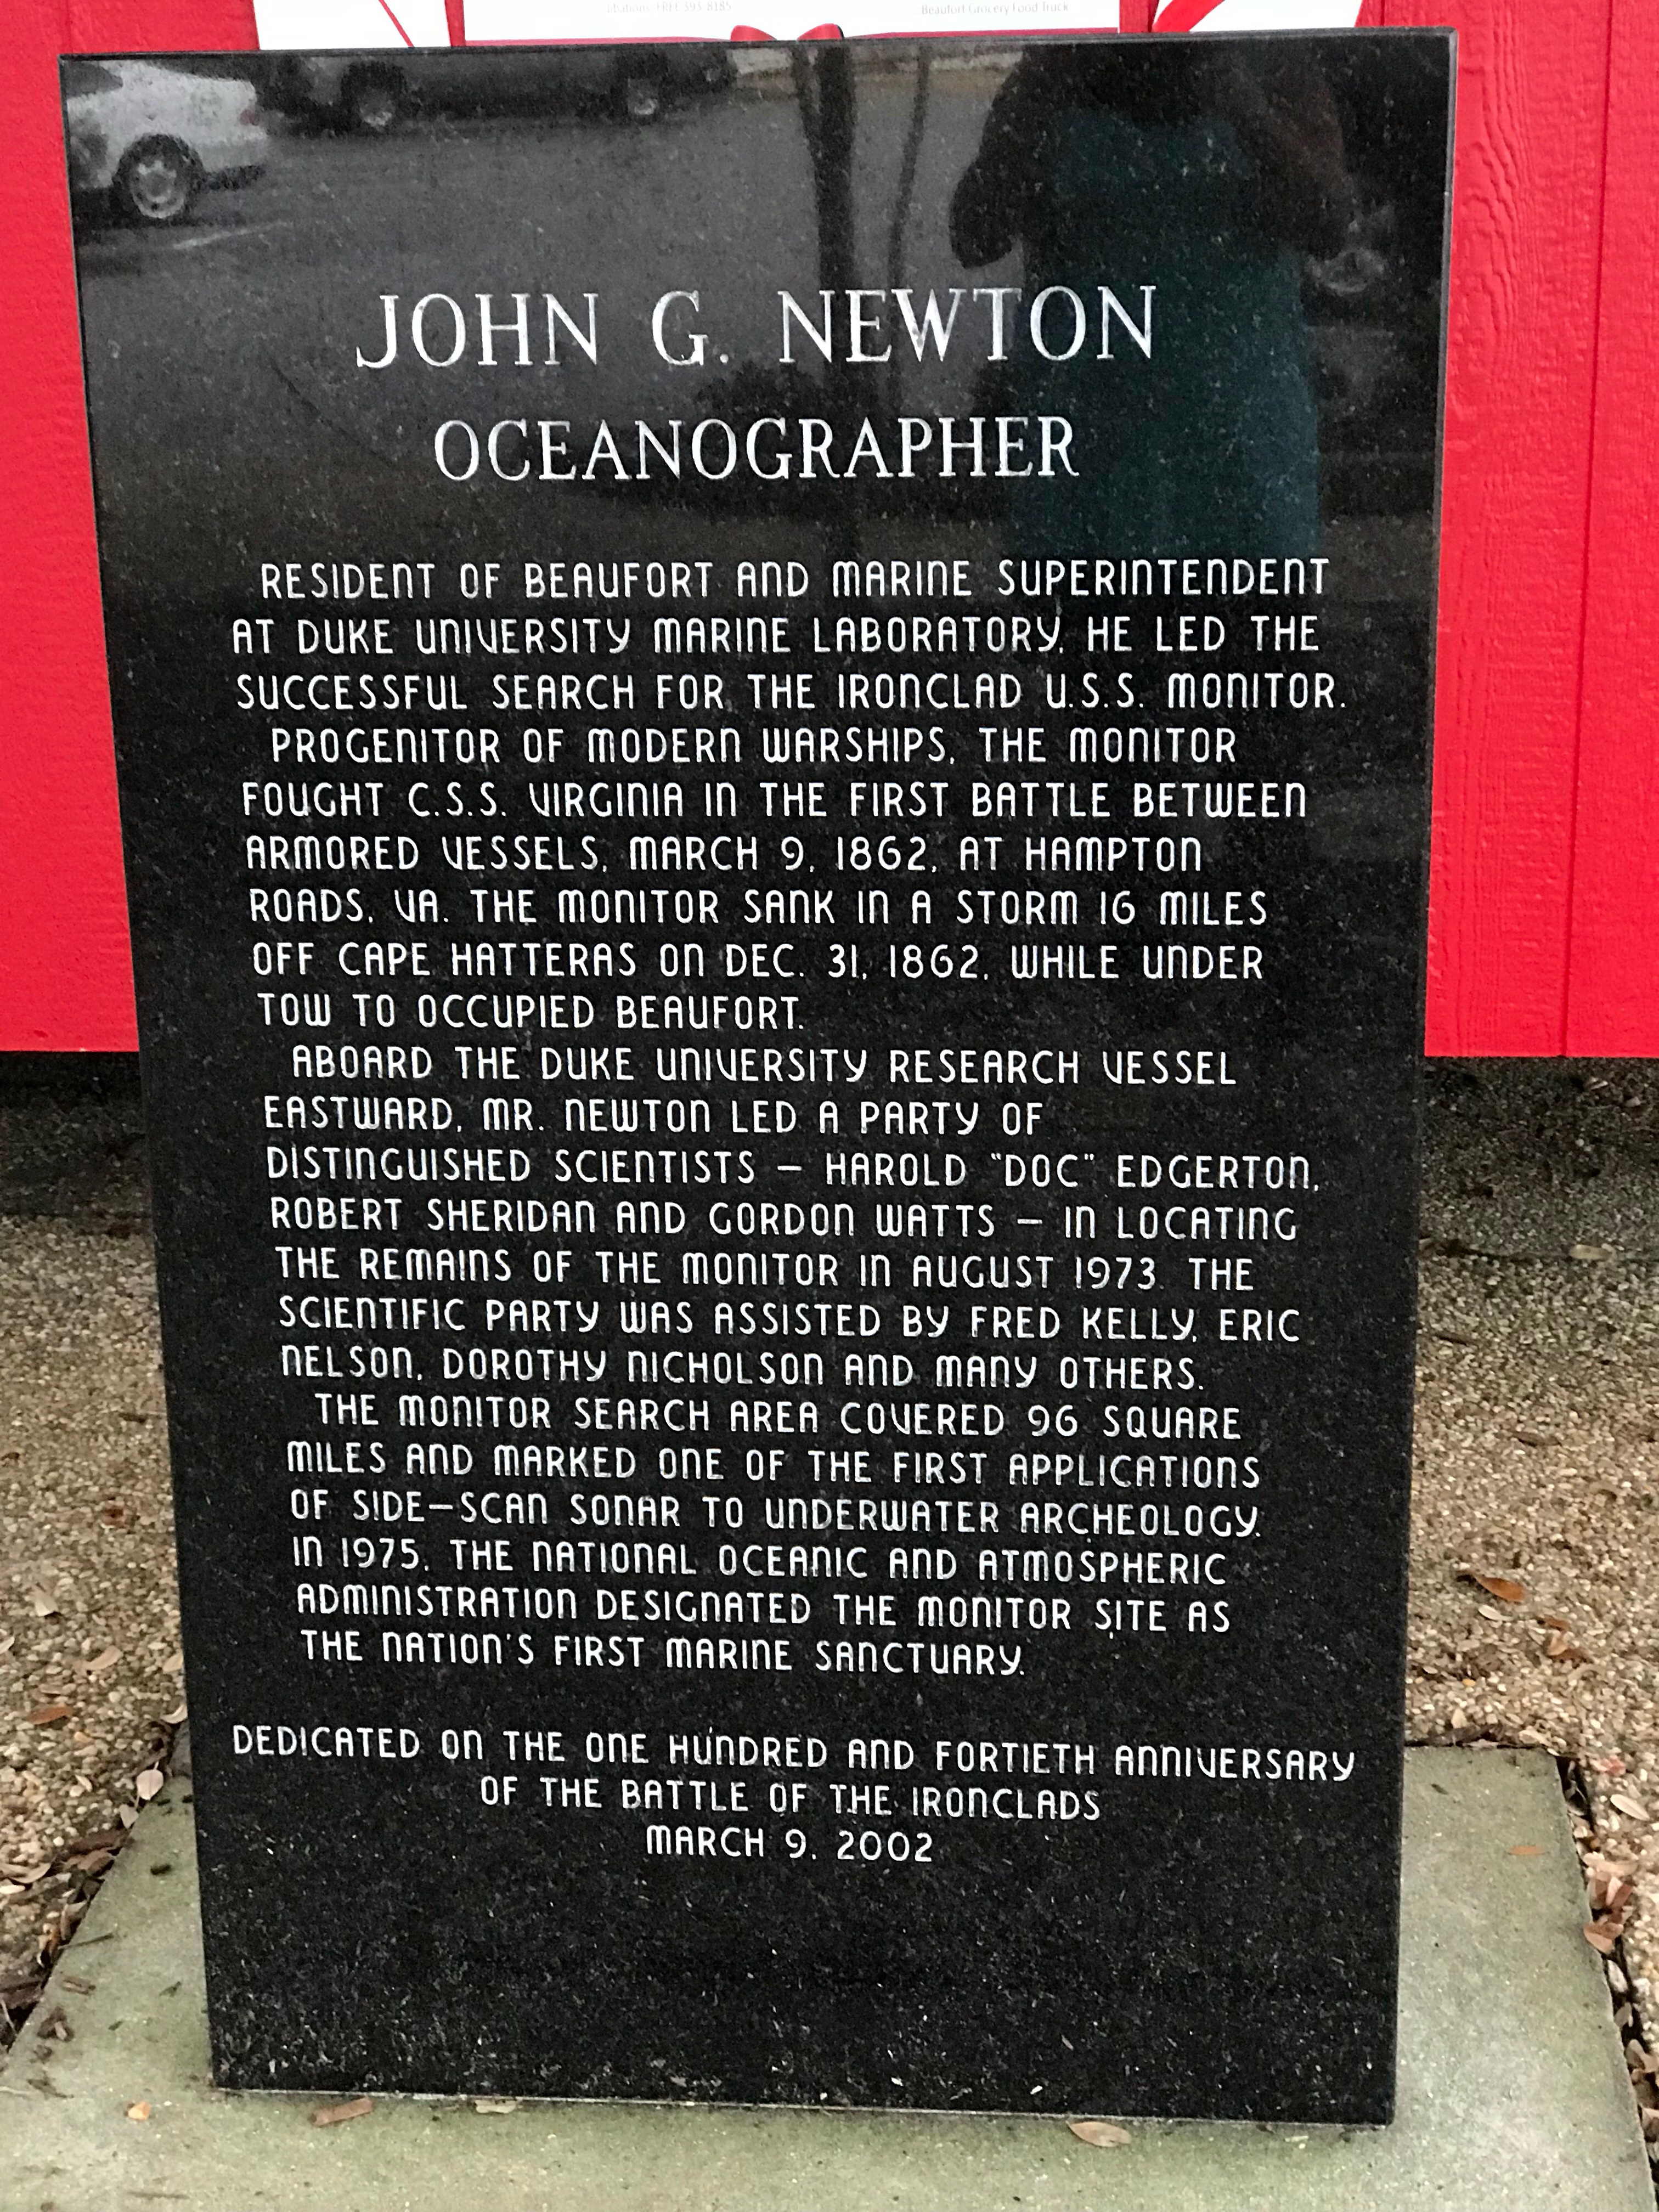 John G. Newton